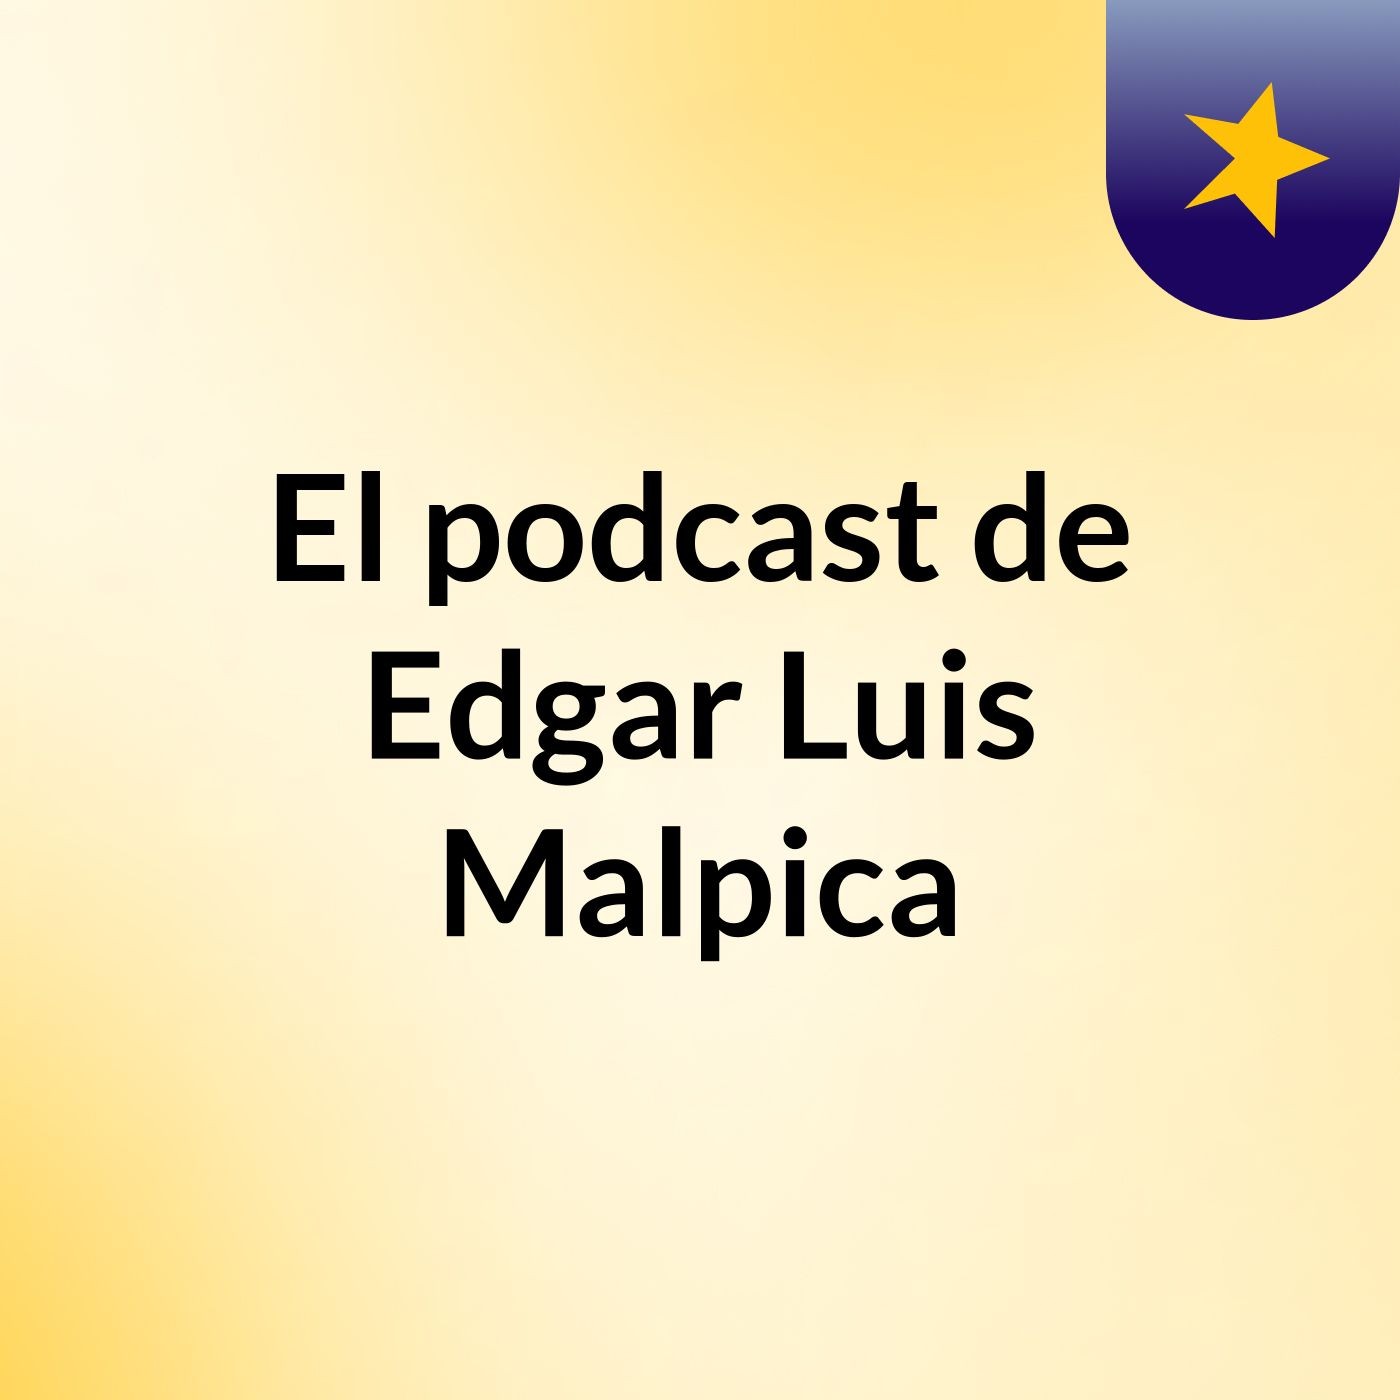 El podcast de Edgar Luis Malpica